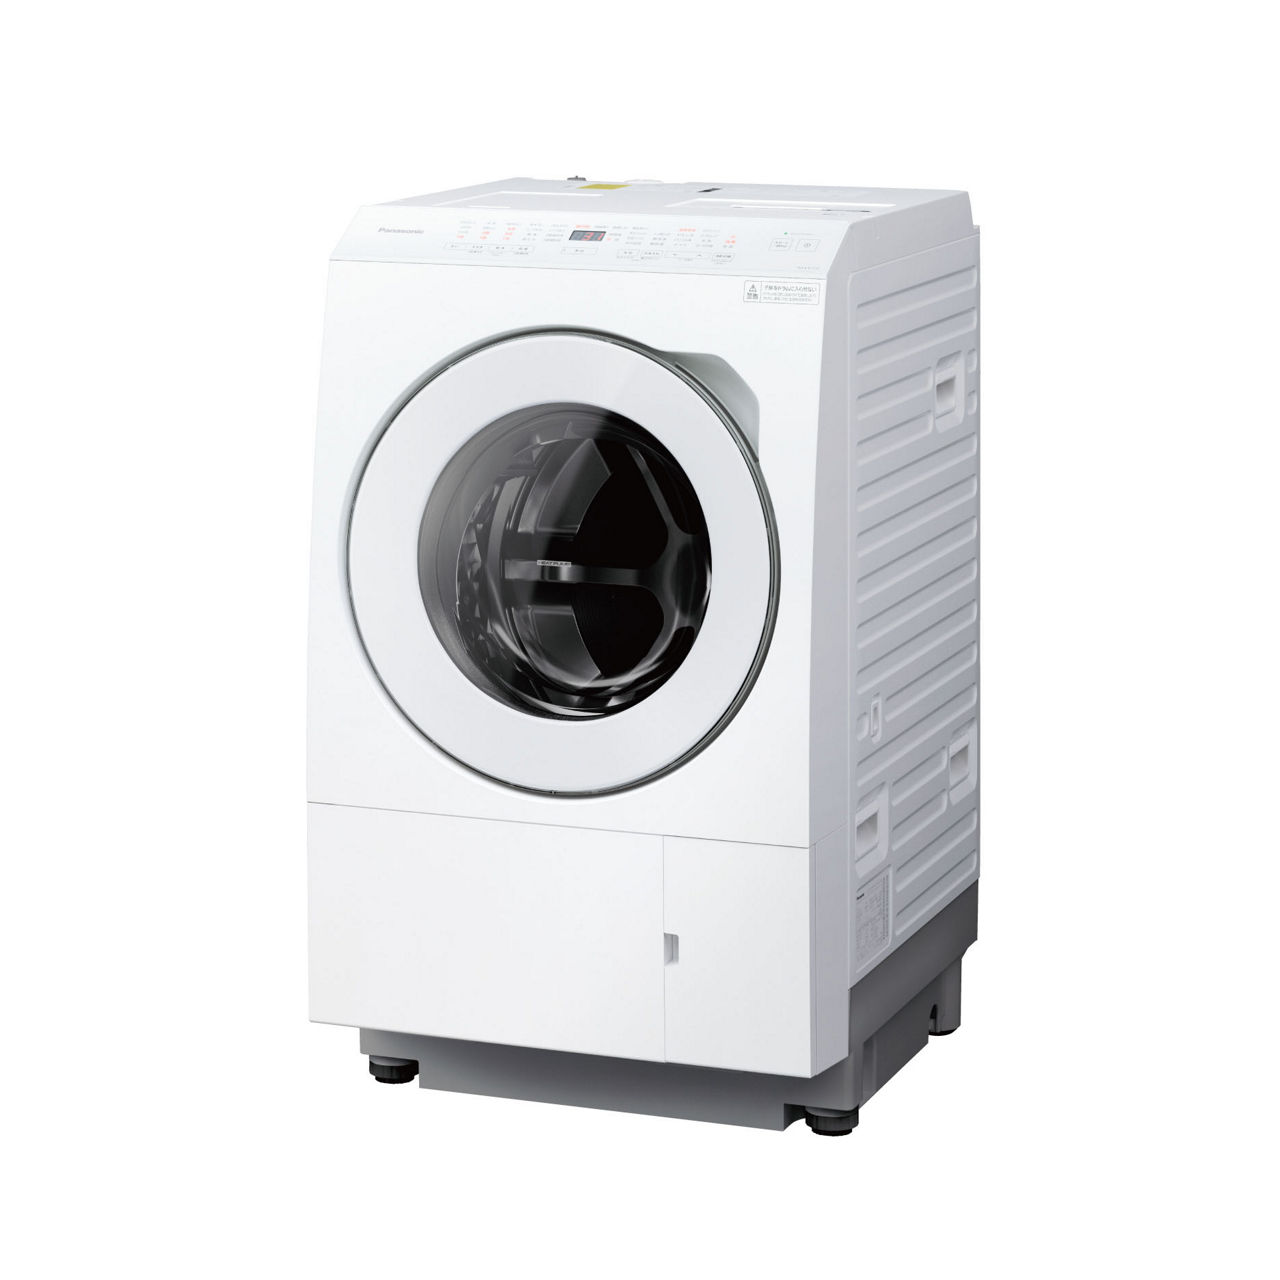 概要 ななめドラム洗濯乾燥機 NA-LX113CL | 洗濯機・衣類乾燥機 